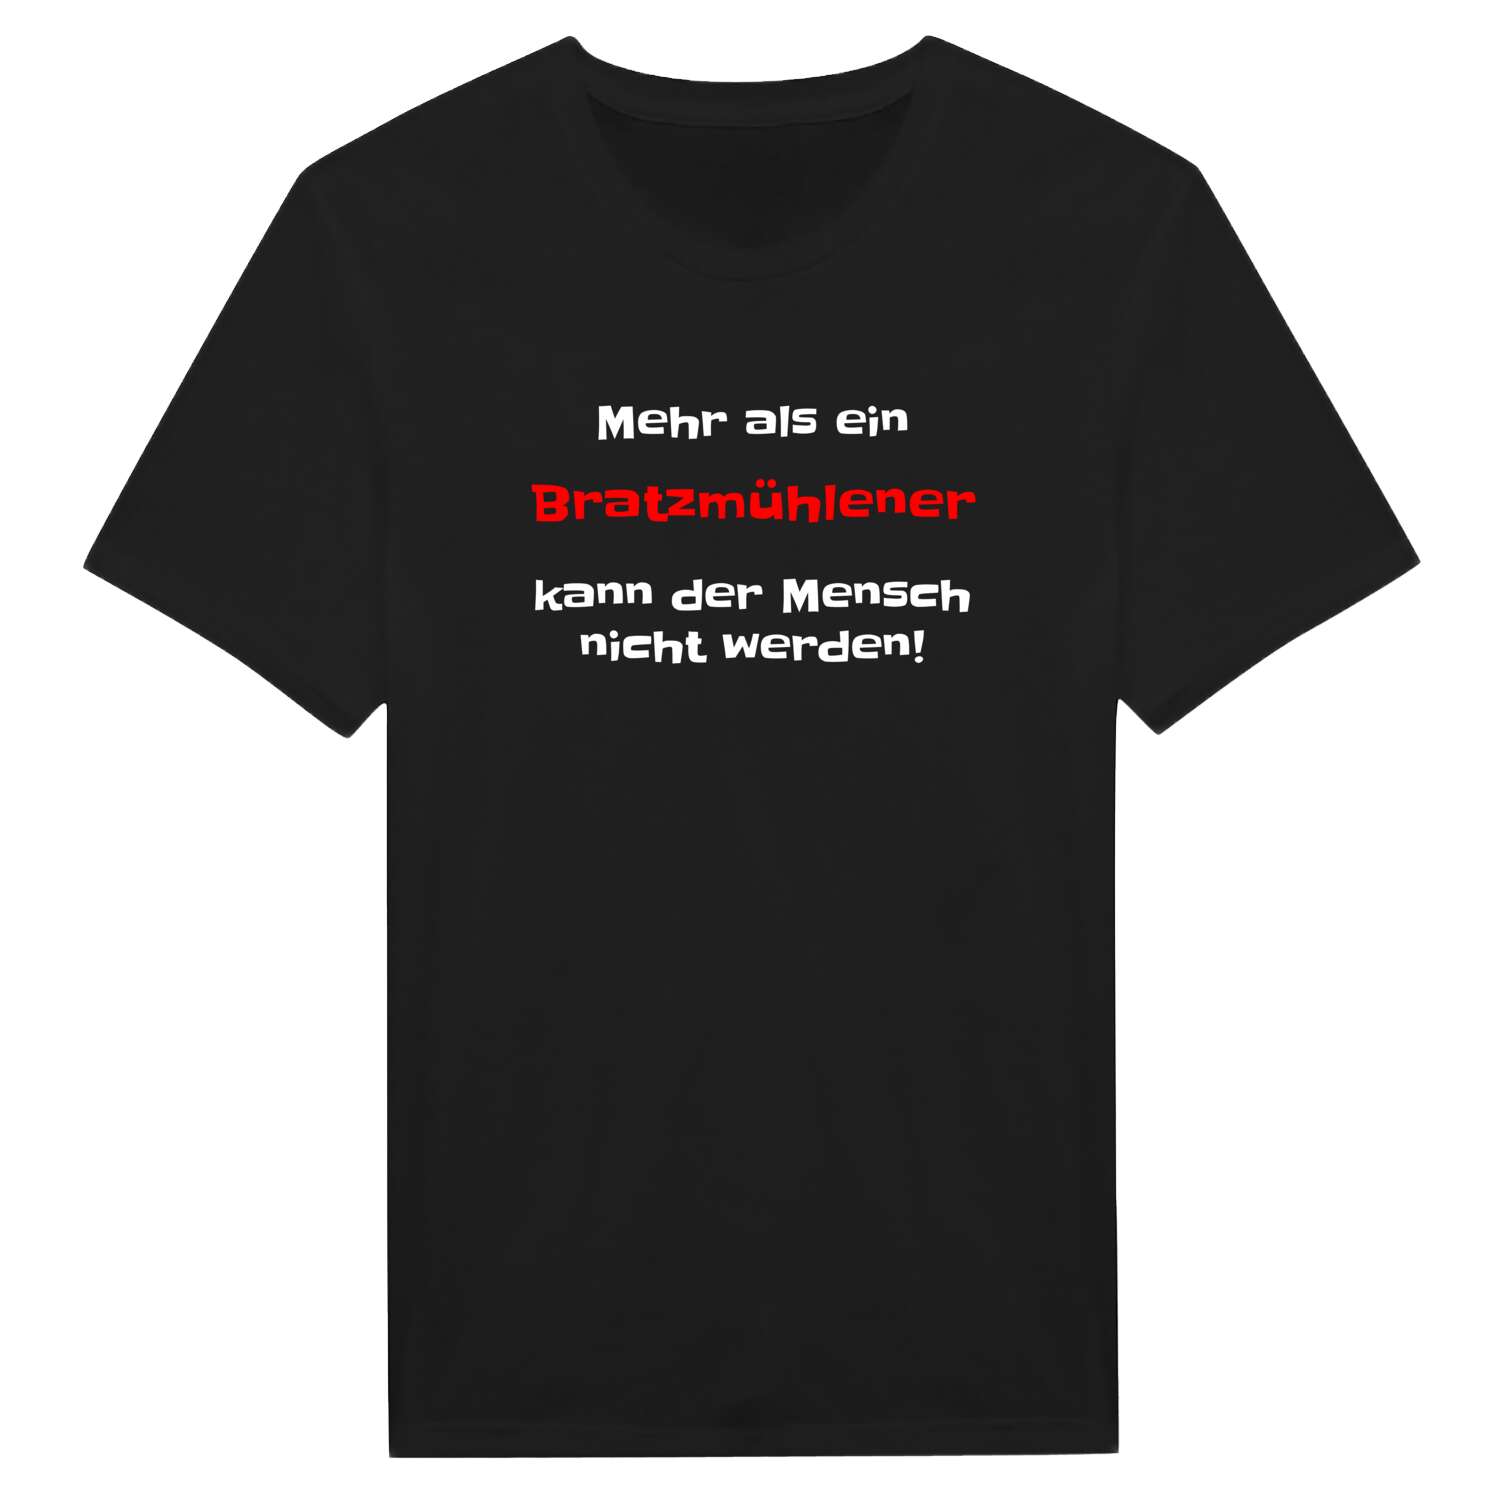 Bratzmühle T-Shirt »Mehr als ein«